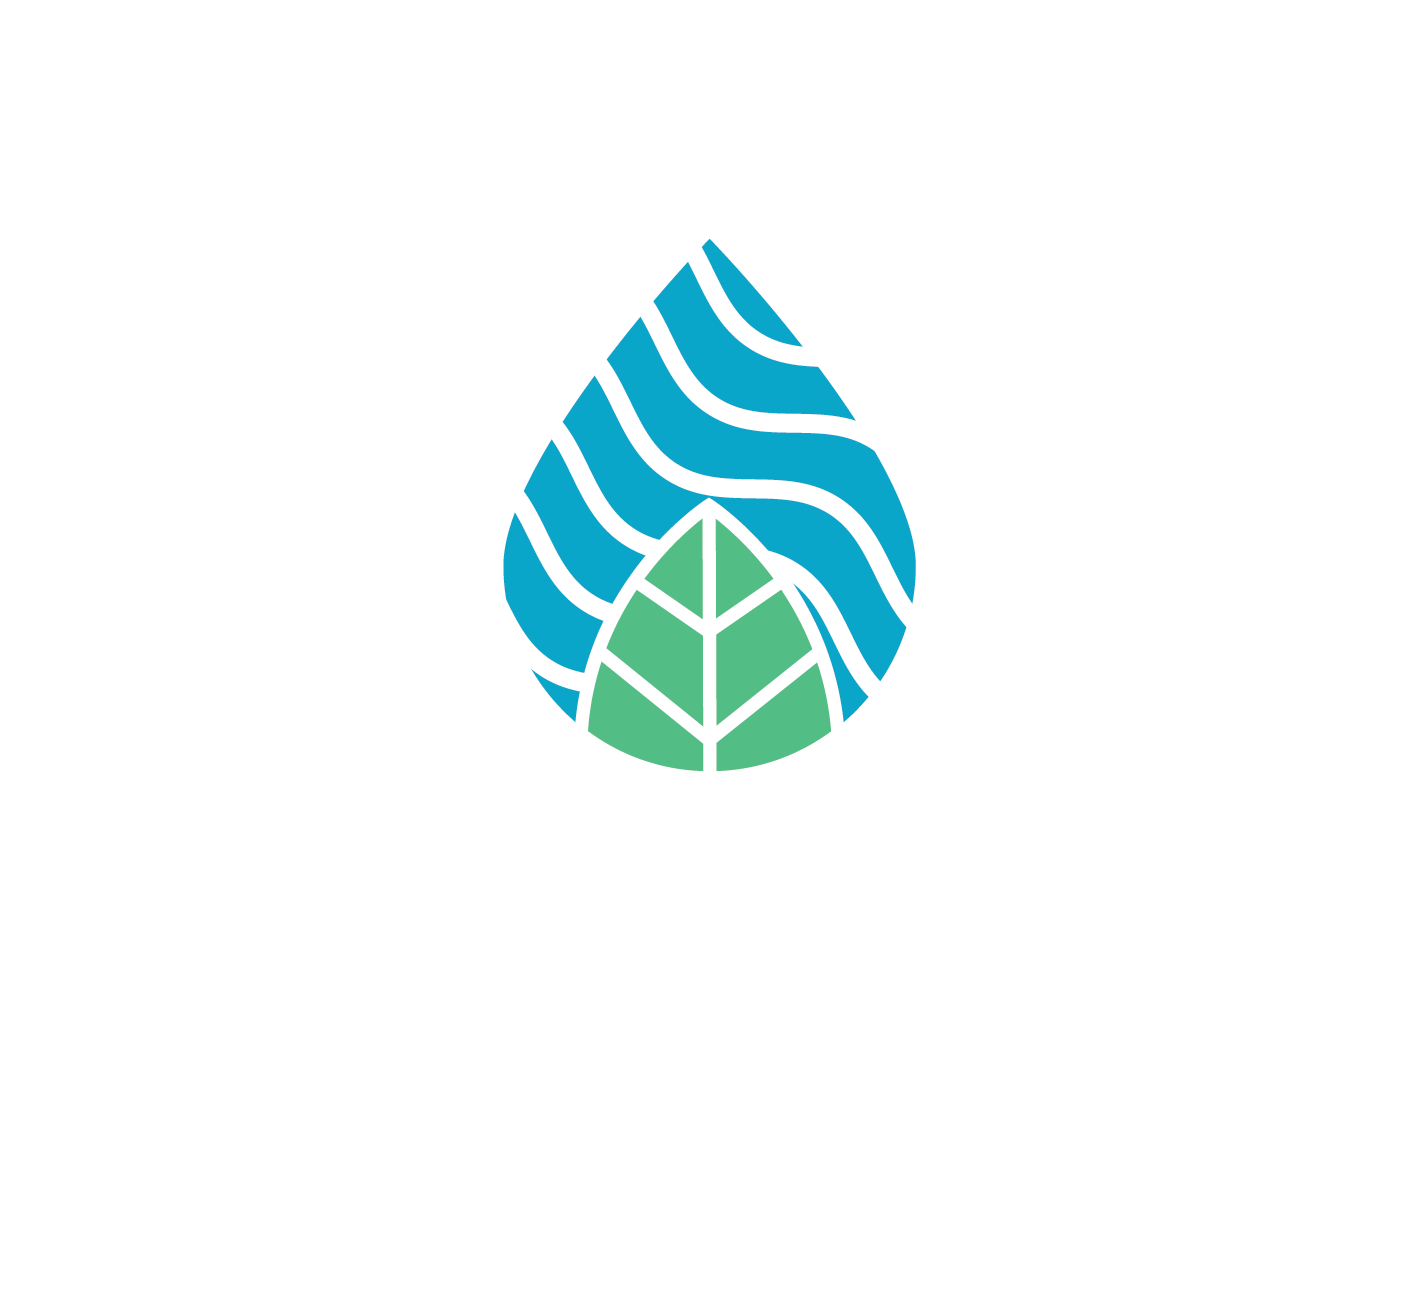 Logo Association pour la protection de l'environnement du lac Saint-Joseph